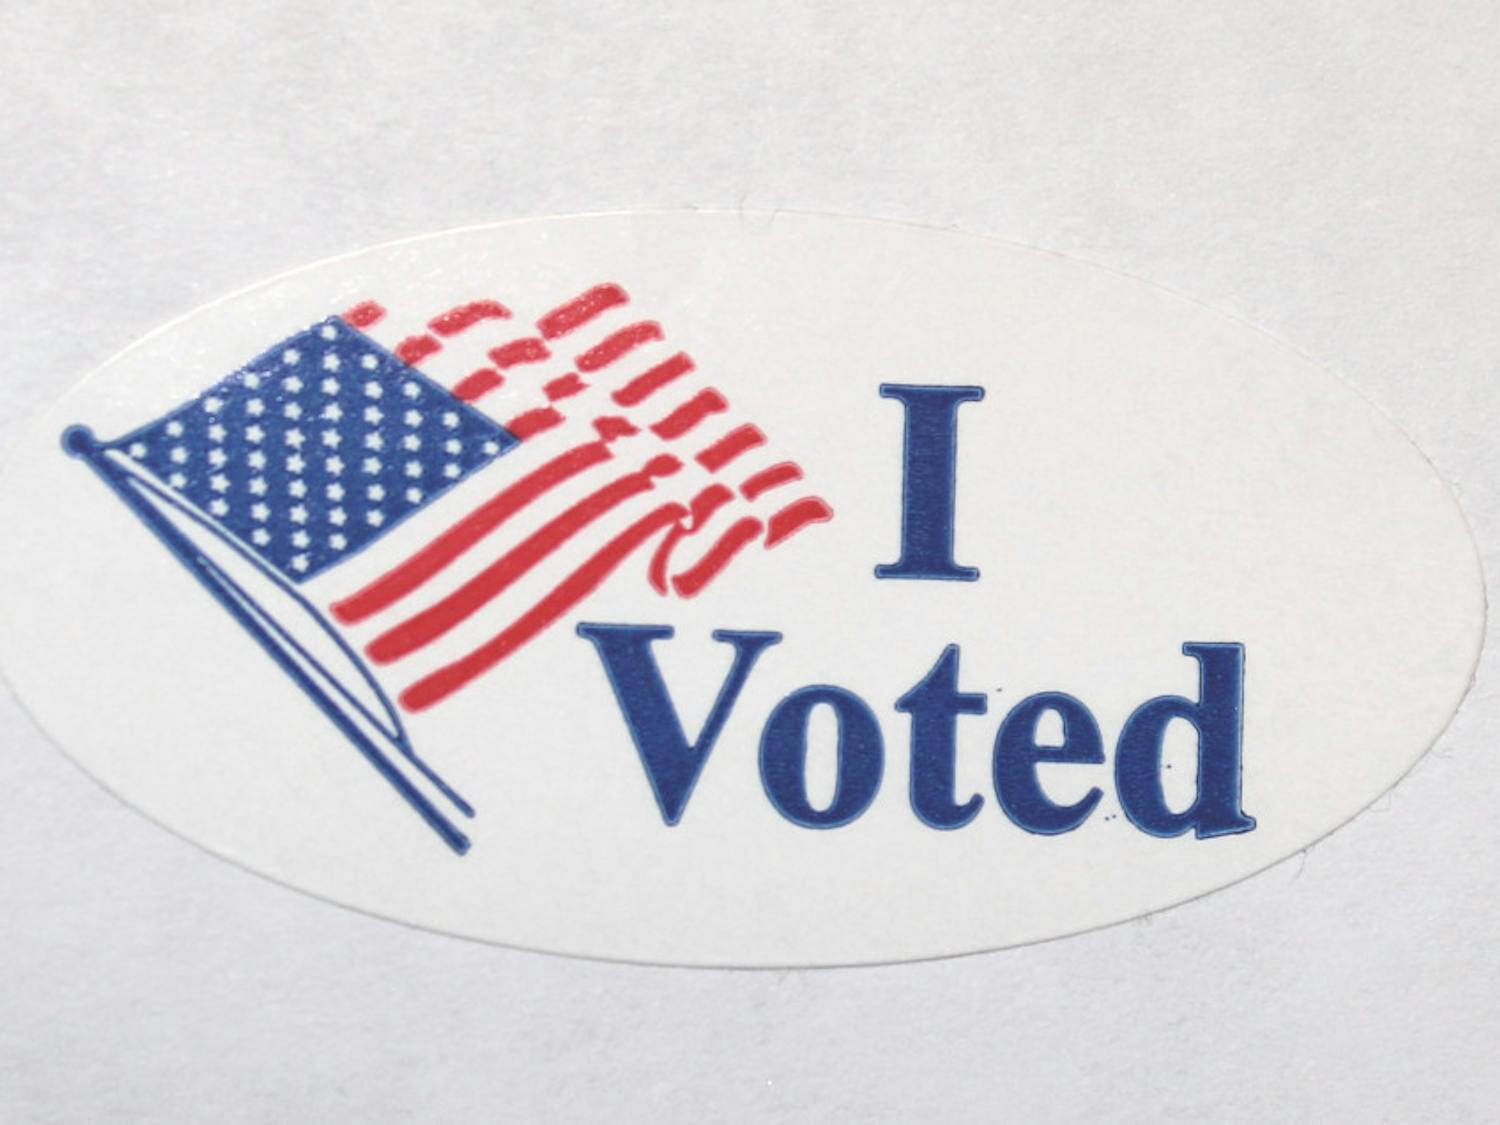 I_Voted_Sticker-via-Wikimedia